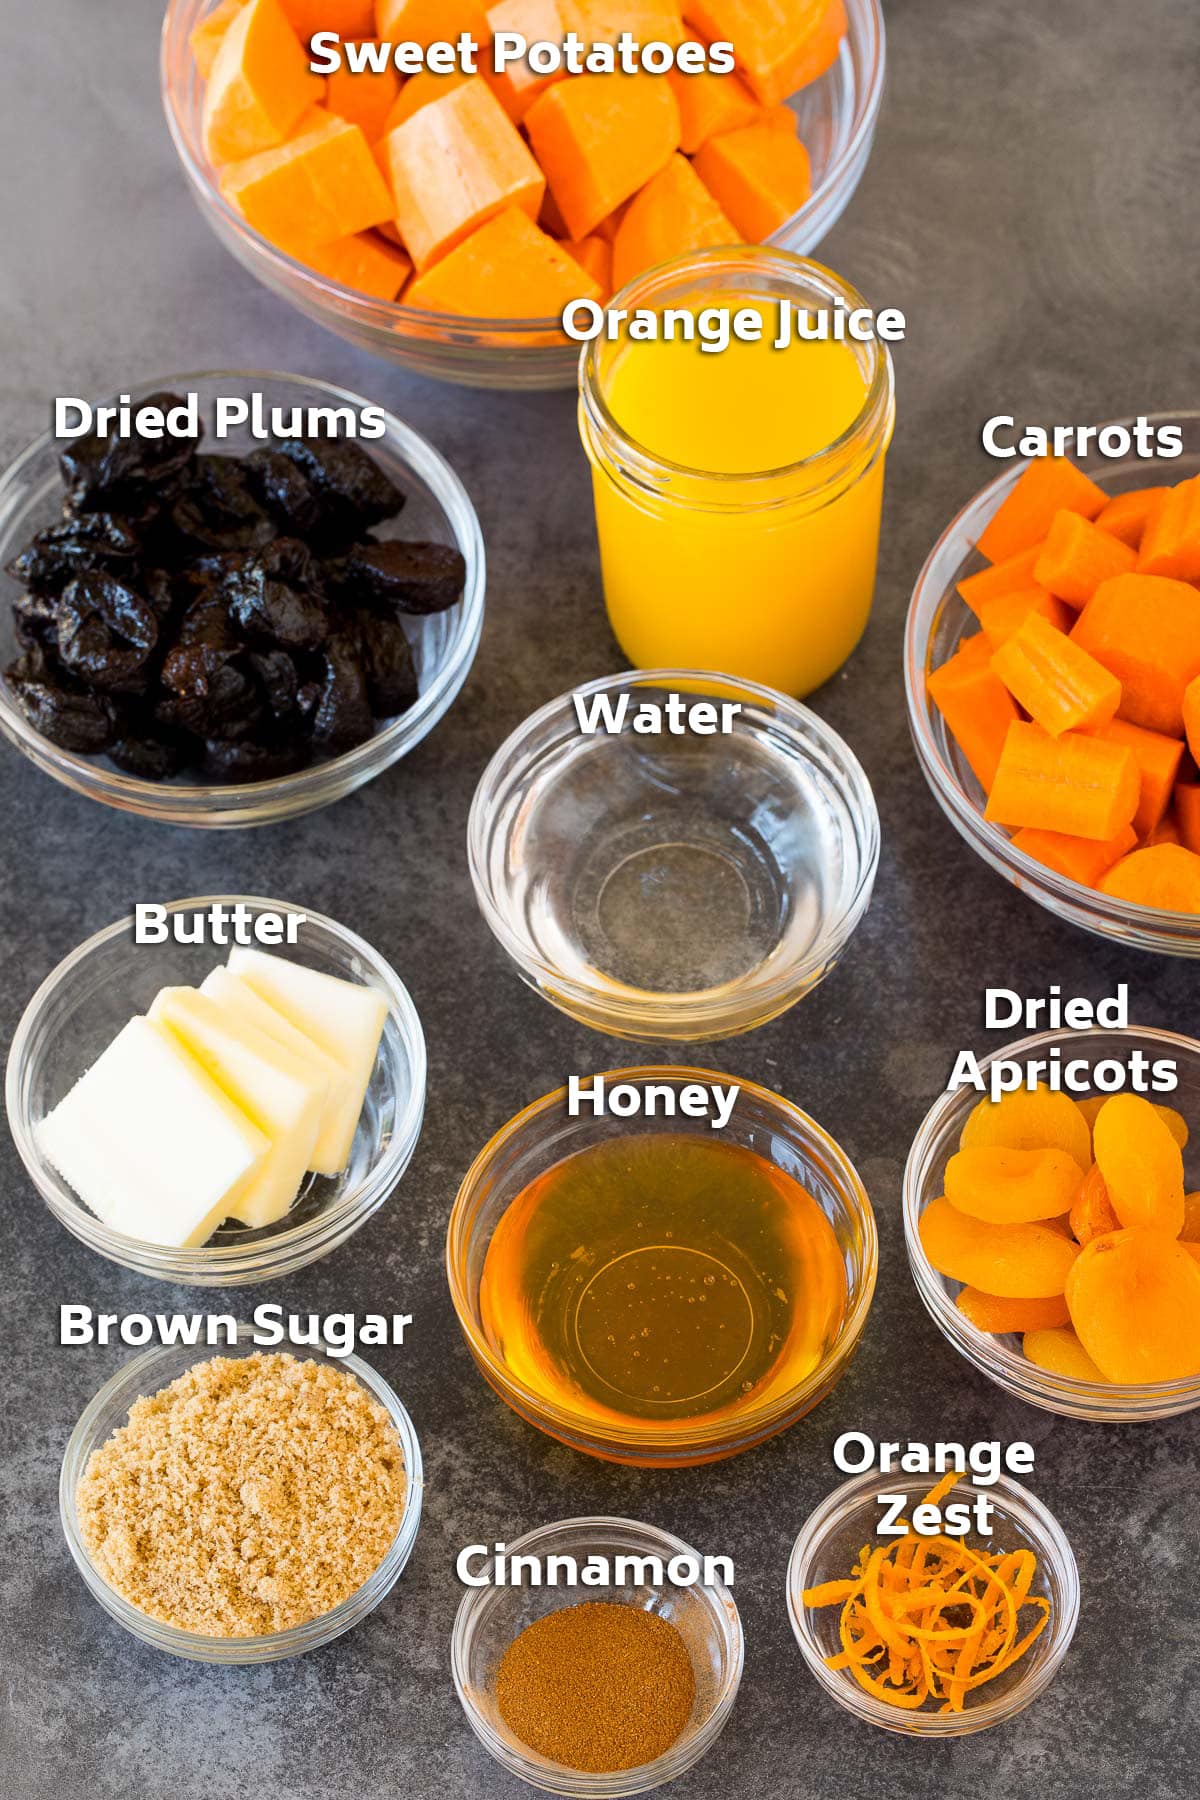 Bowls of ingredients including vegetables, dried fruit, sweeteners and seasonings.